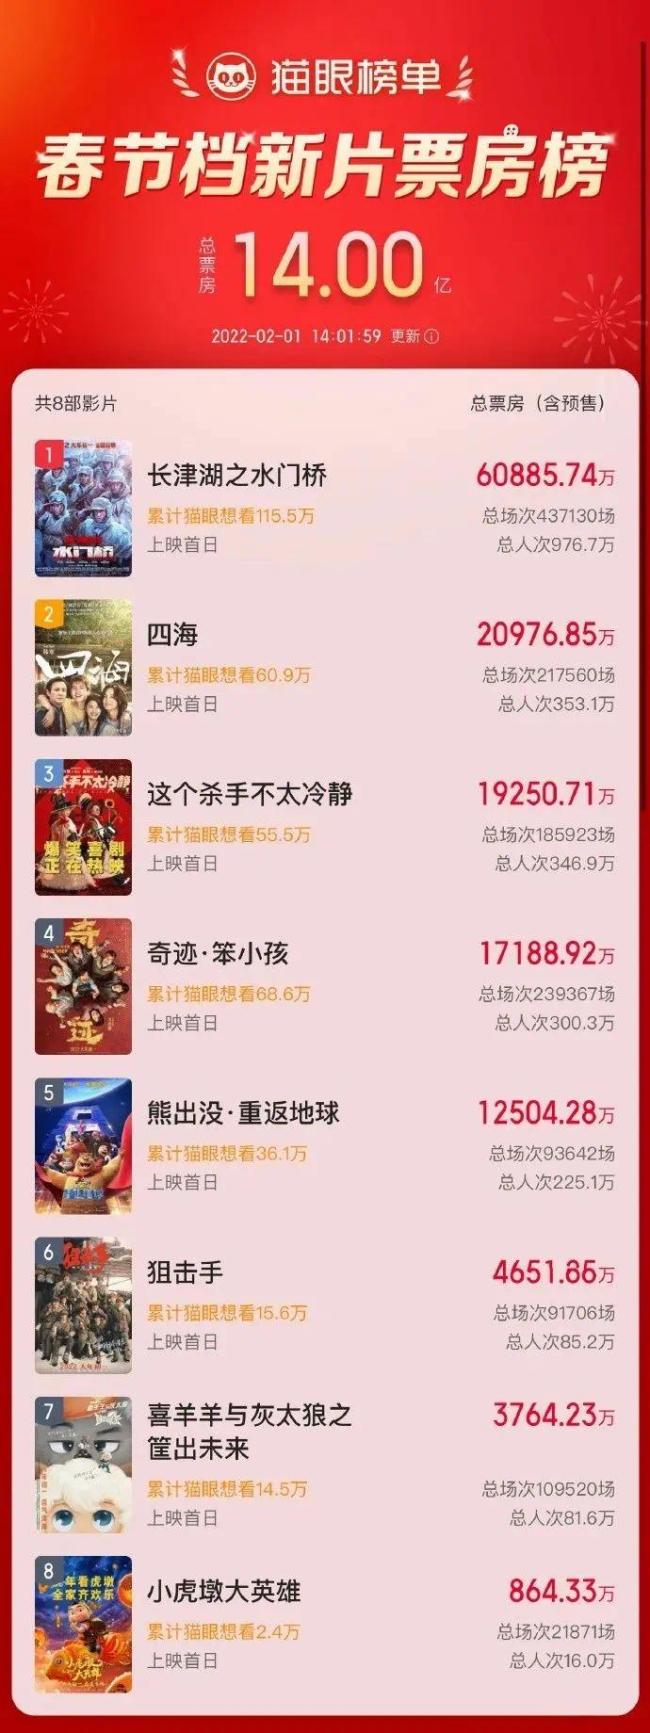 电影中国乒乓改档至2月17日上映(组图)